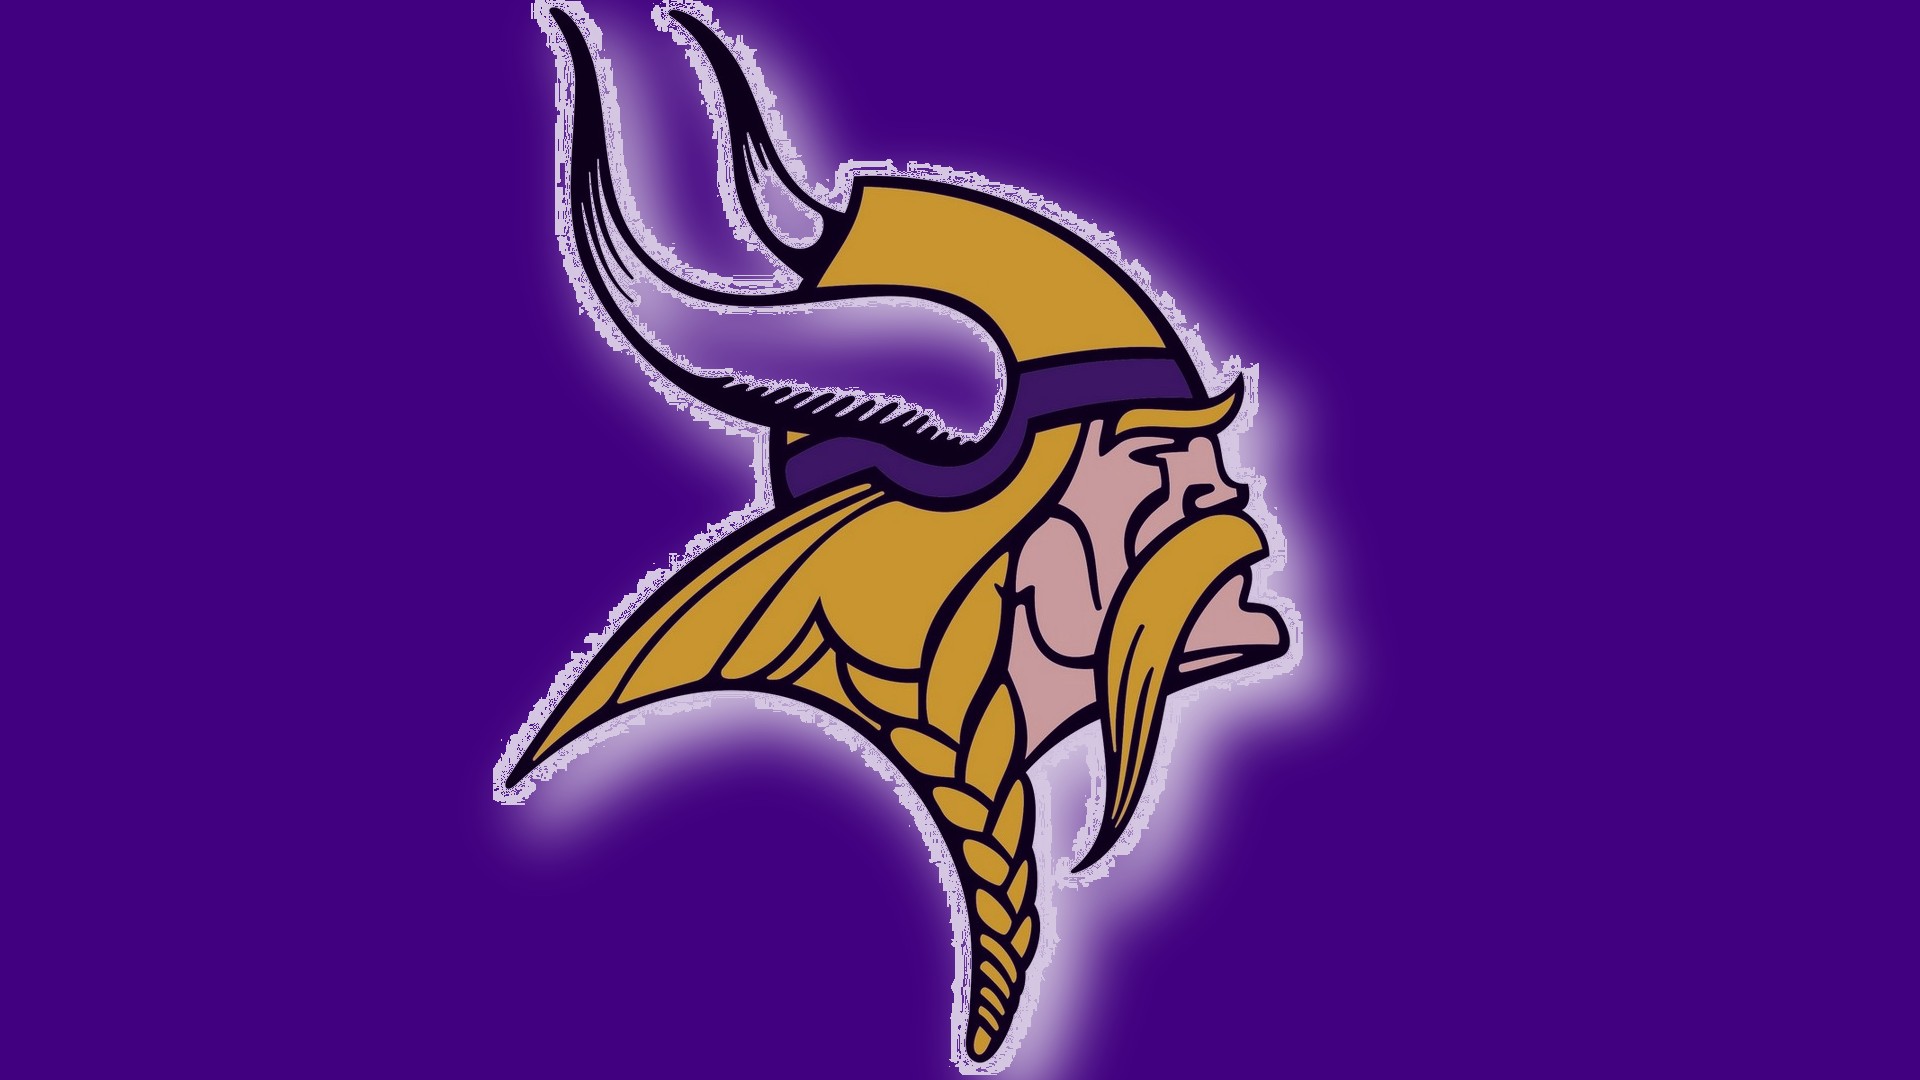 NFL Minnesota Vikings Logo 1920x1080 HD NFL Minnesota Vikings 1920x1080